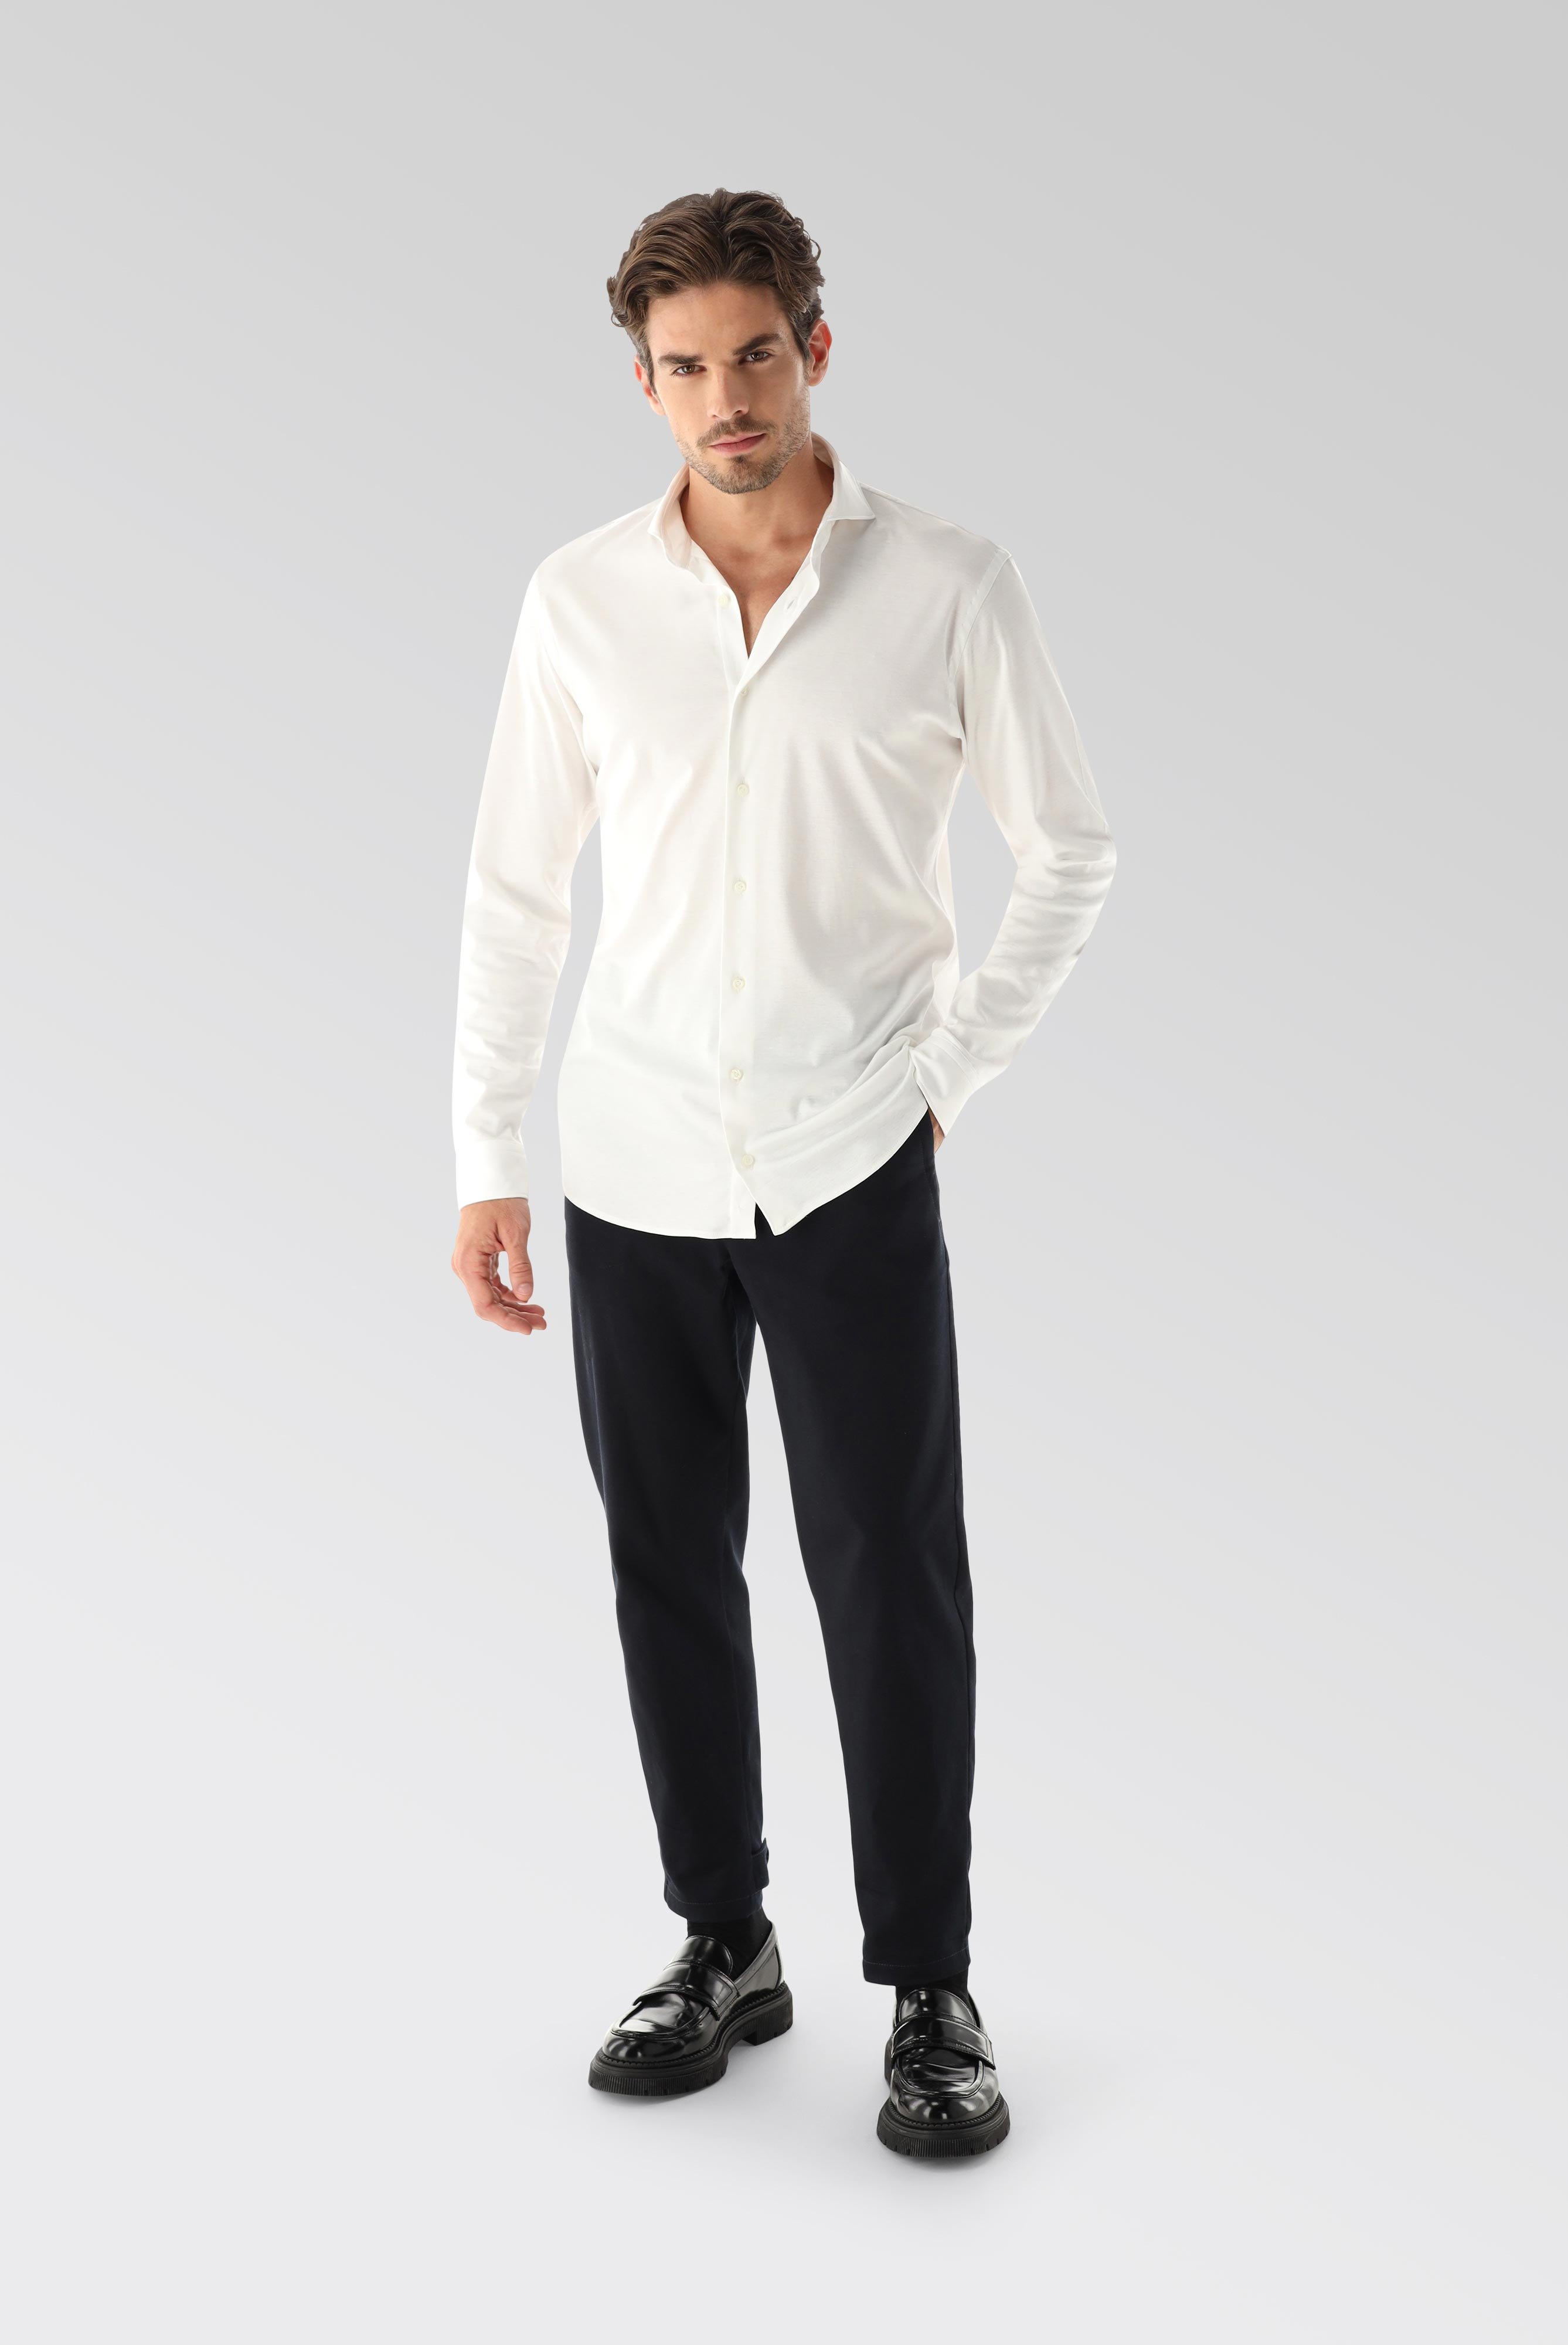 Jersey Shirts+Jersey Shirt Swiss Cotton Slim Fit+20.1682.UC.180031.000.XS